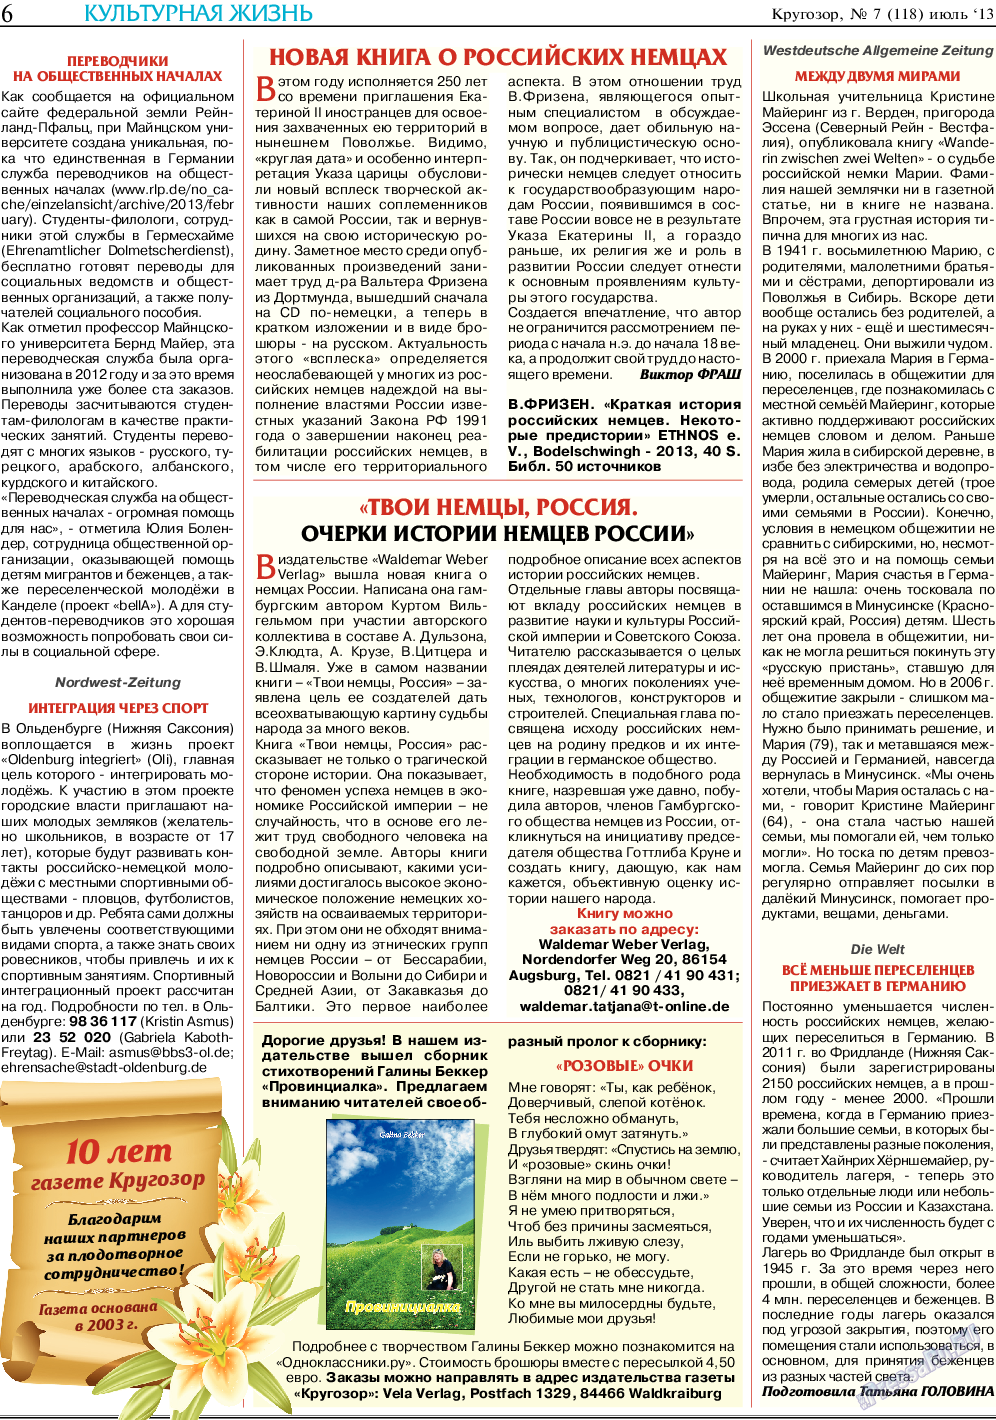 Кругозор, газета. 2013 №7 стр.6